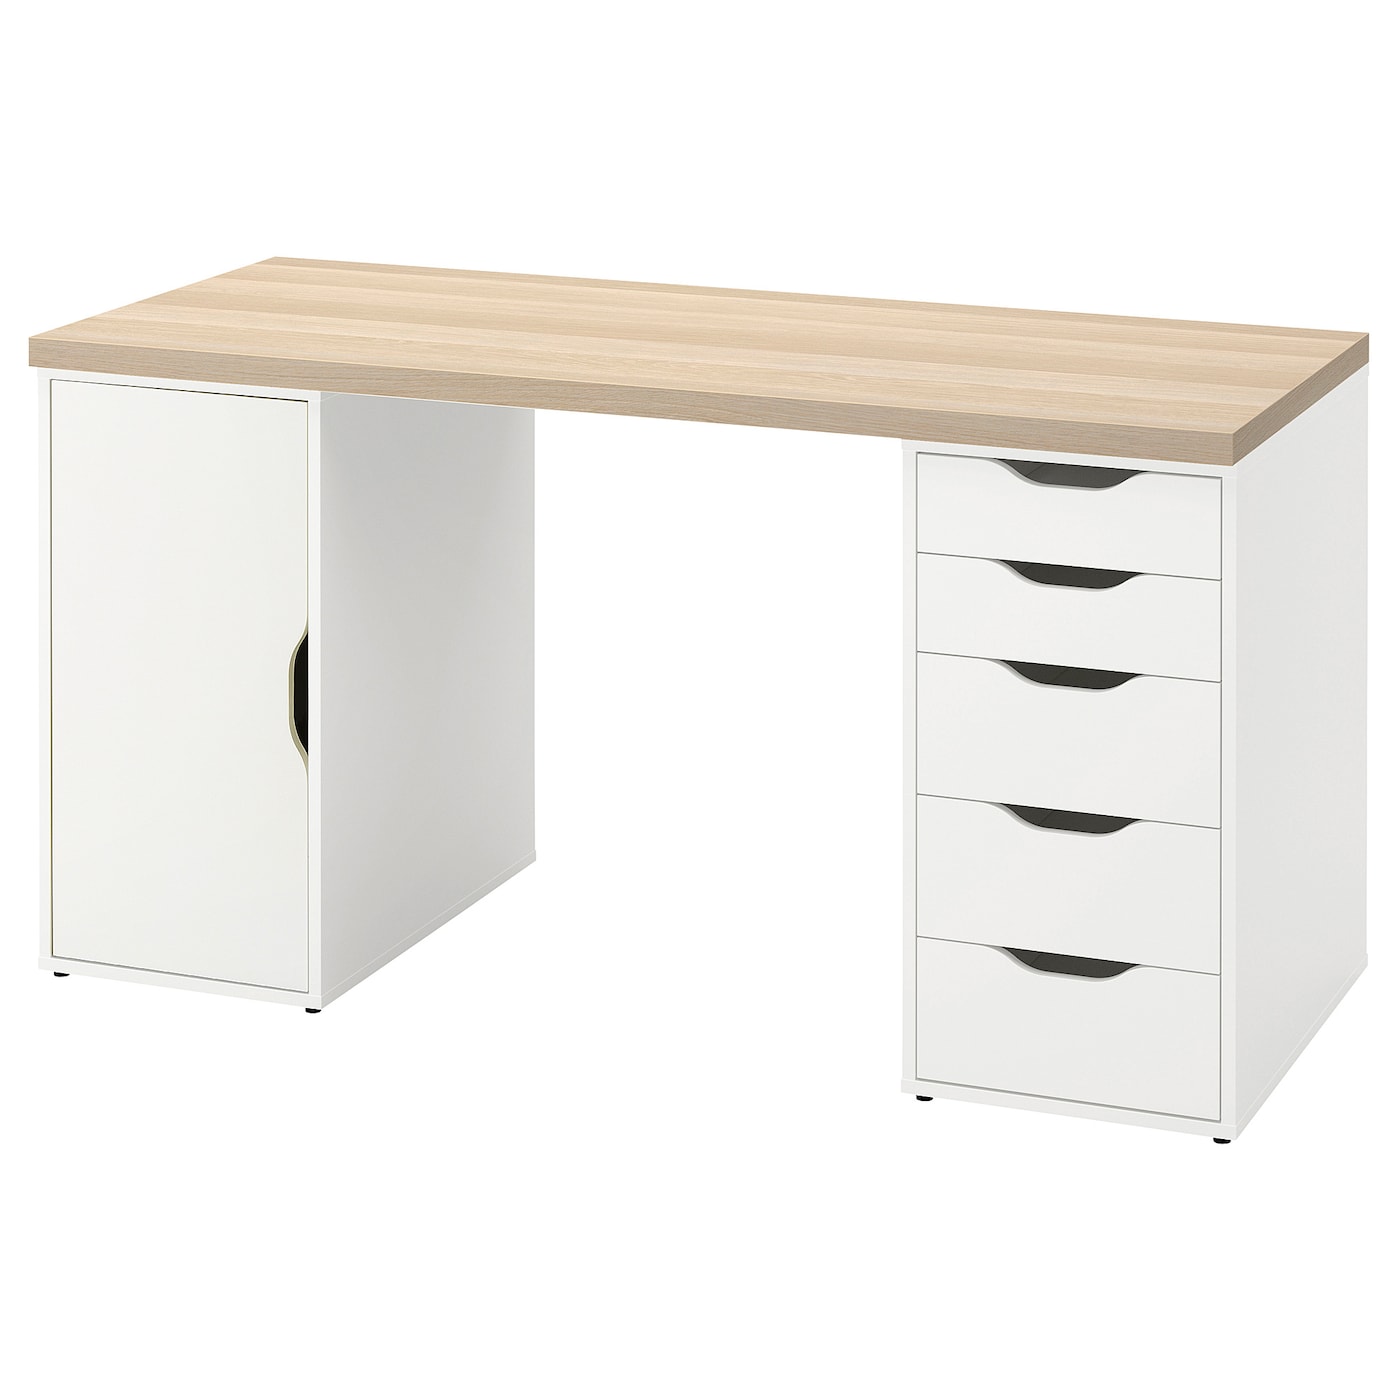 Письменный стол с ящиками - IKEA LAGKAPTEN/ALEX/ЛАГКАПТЕН/АЛЕКС ИКЕА, 140х60 см, под беленый дуб/белый